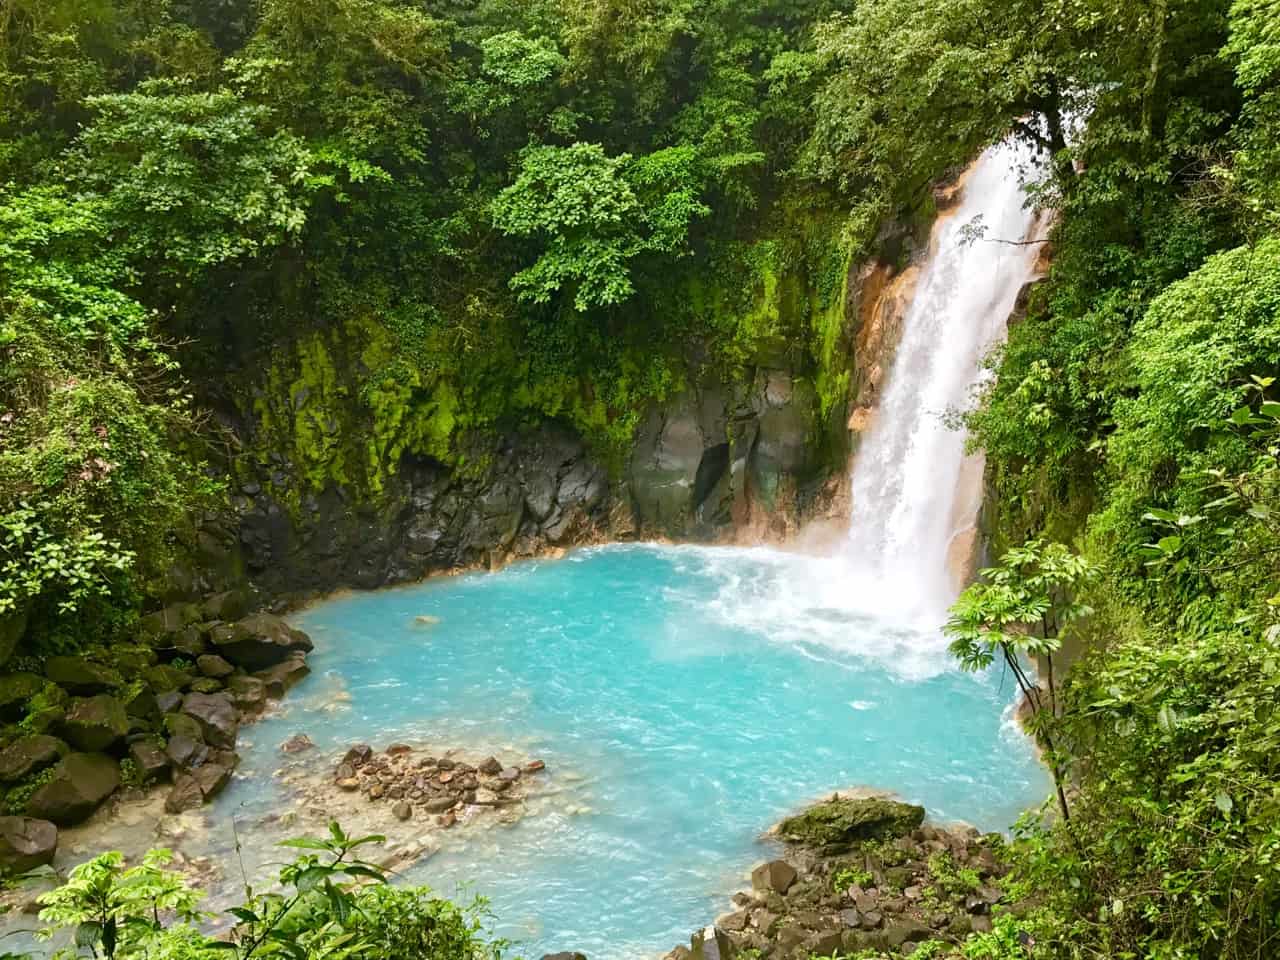 Rio Celeste vattenfall kastar sig in i en mjölkblå pool vid Tenorio Volcano National Park, en av de mindre besökta parkerna i Costa Rica.